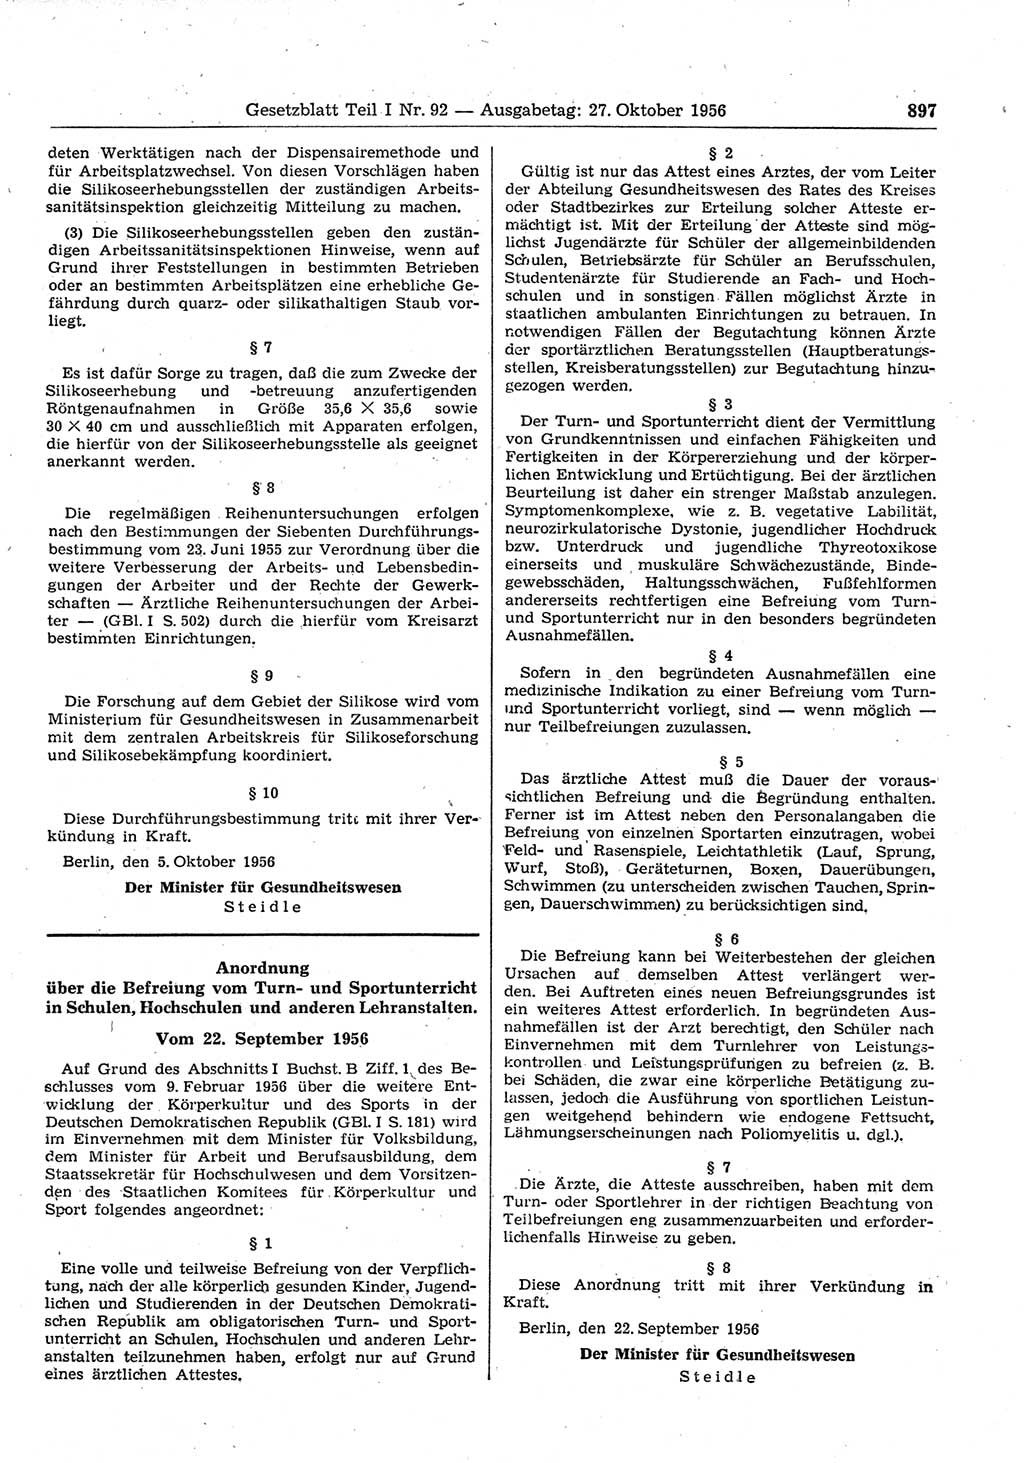 Gesetzblatt (GBl.) der Deutschen Demokratischen Republik (DDR) Teil Ⅰ 1956, Seite 897 (GBl. DDR Ⅰ 1956, S. 897)